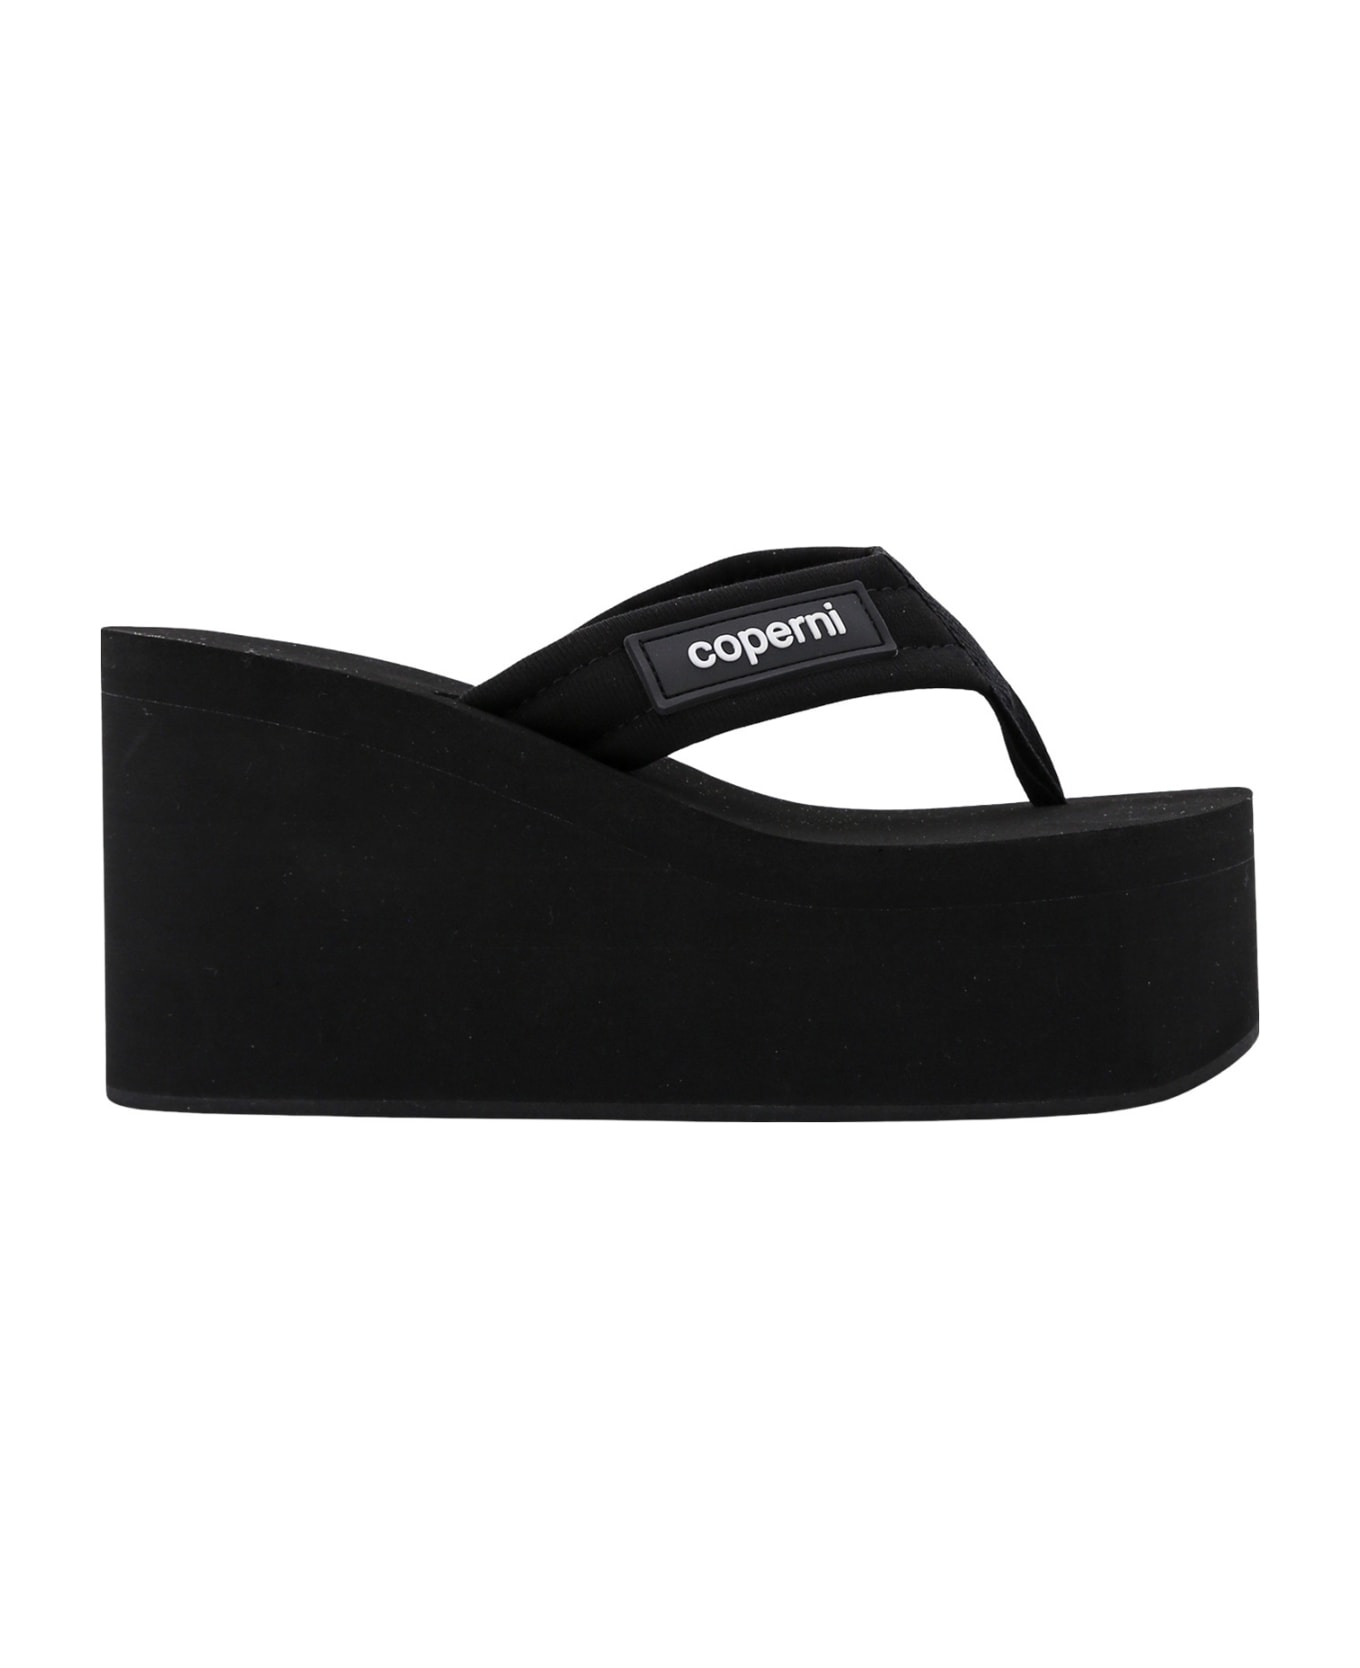 Coperni Sandals - Black サンダル